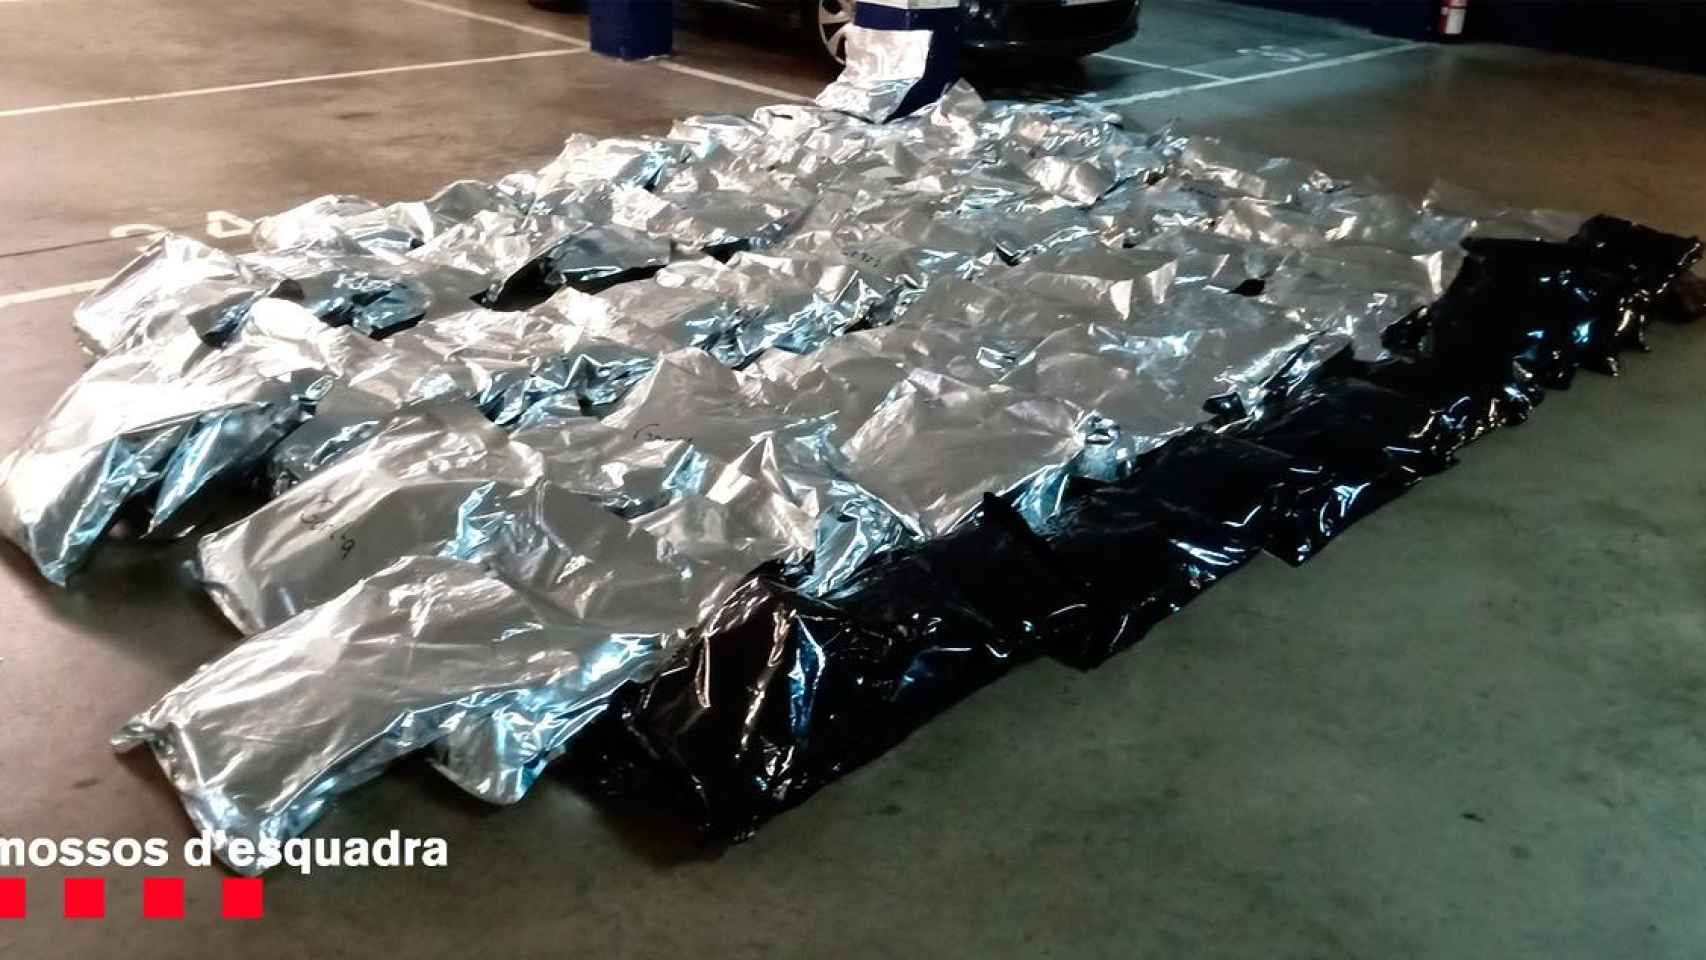 Las 92 bolsas de marihuana que tres personas transportaban en una furgoneta / MOSSOS